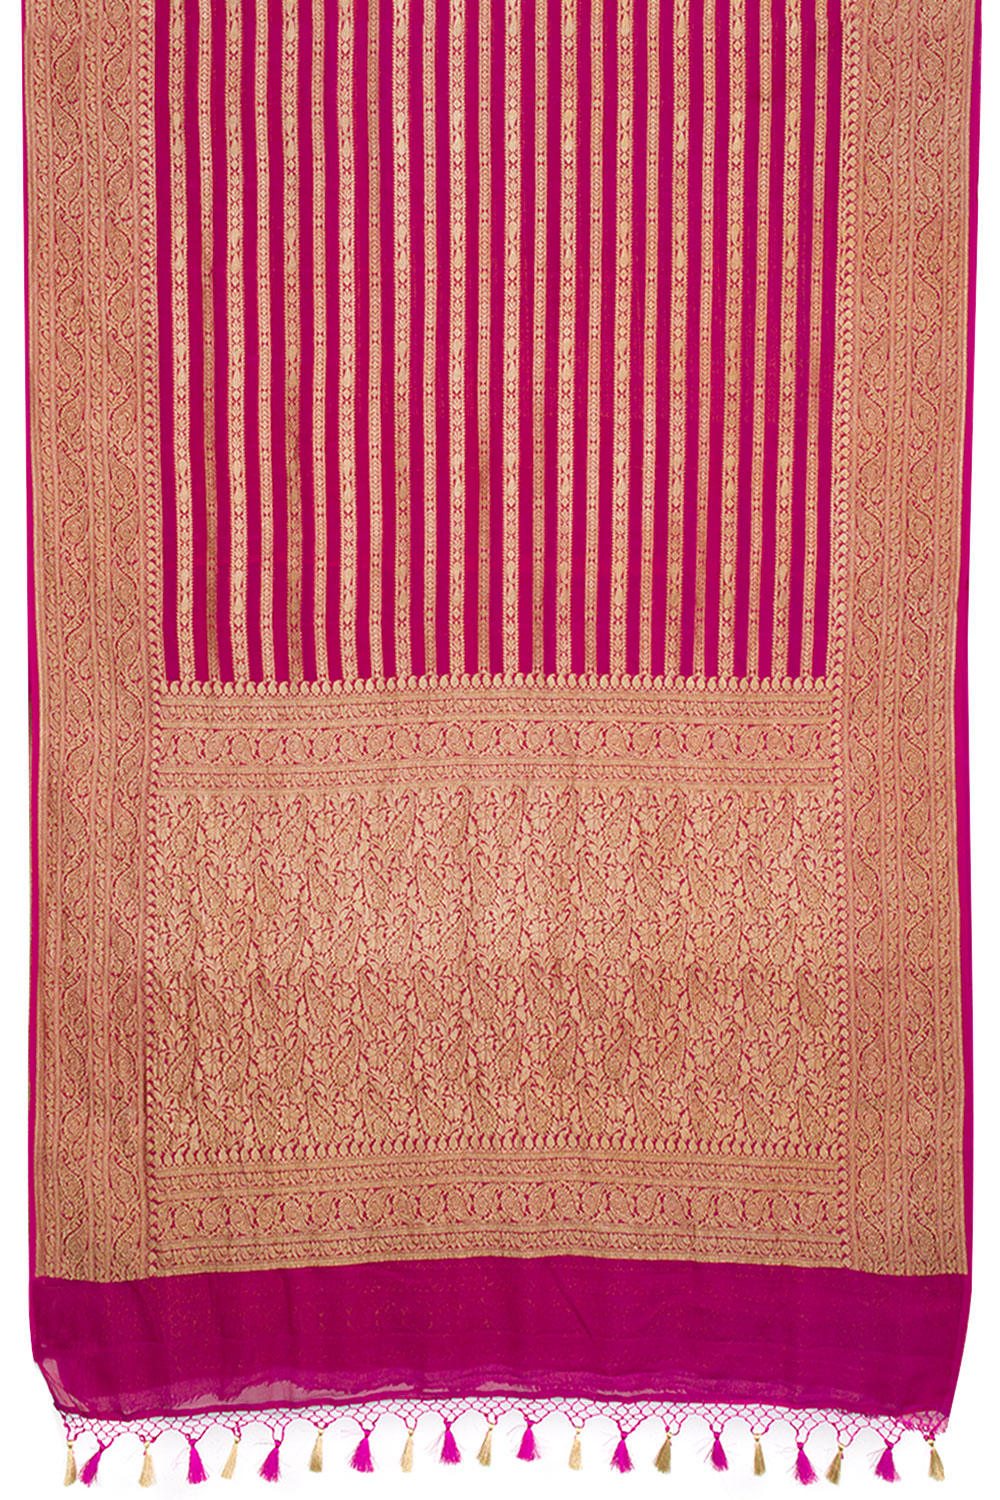 Dark Fuschia Pink Handloom Khaddi Banarasi Chiffon Saree 10062772